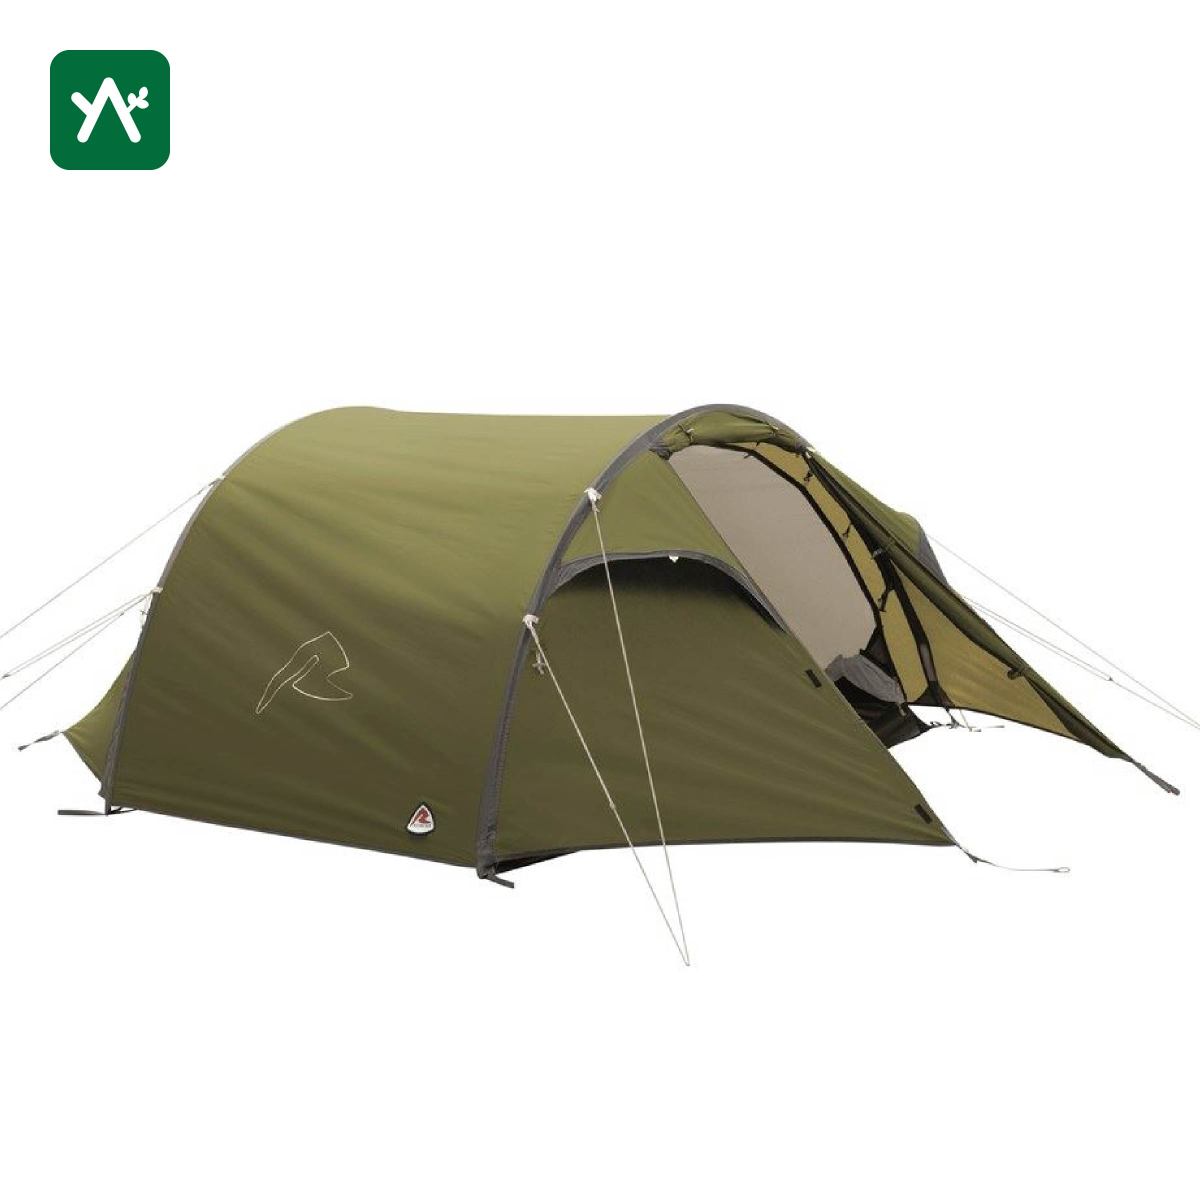 ROBENS ゴスホーク2 ドーム型テントの商品画像